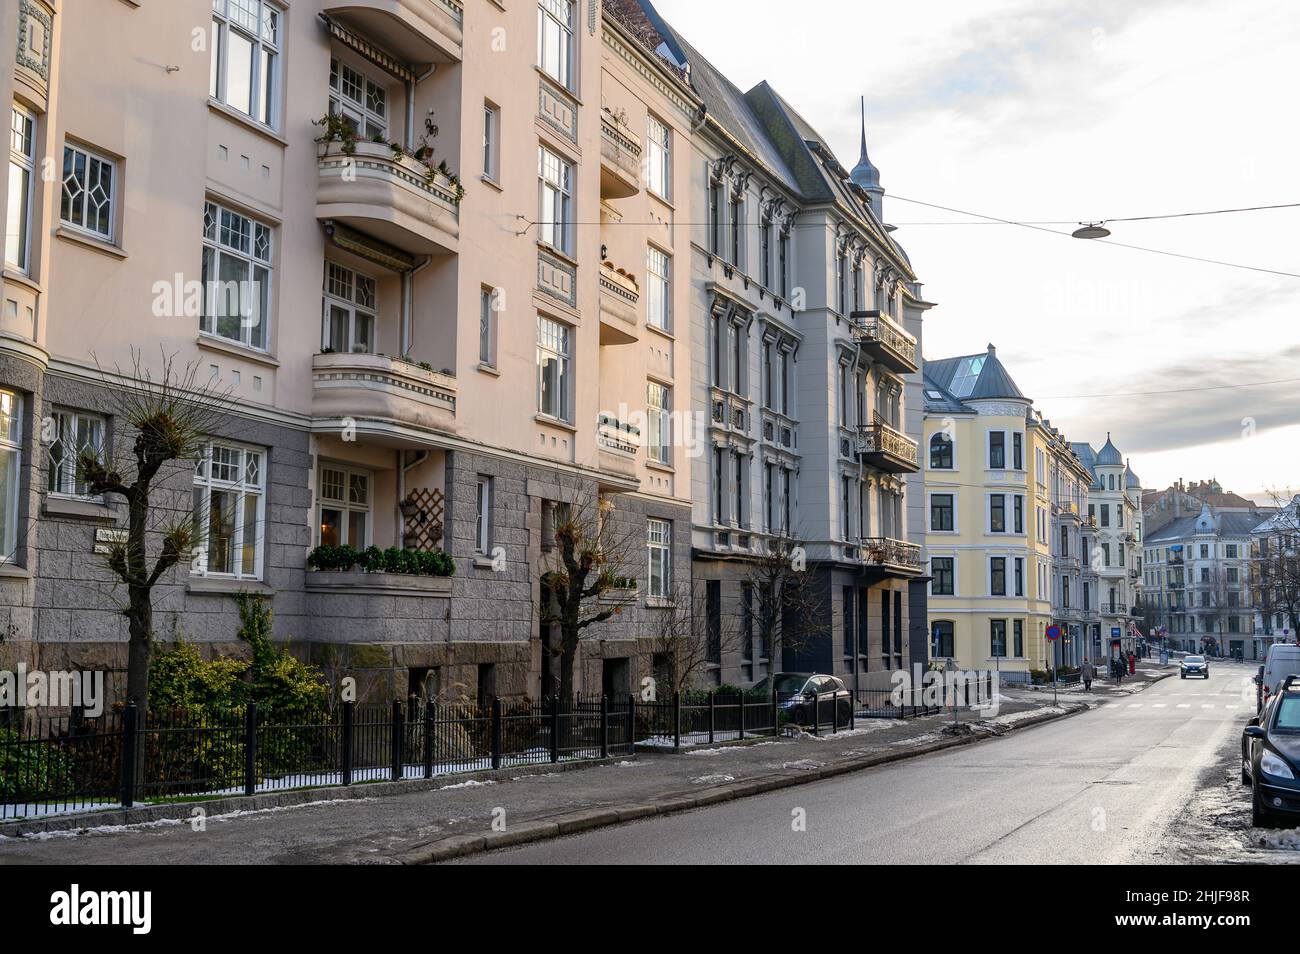 Wohngebäude in Frogner, westlich von Oslo. Erbaut Ende 1800s bis Anfang 1900s in einem kontinentalen Stil, oft Berliner Architektur genannt. Stockfoto